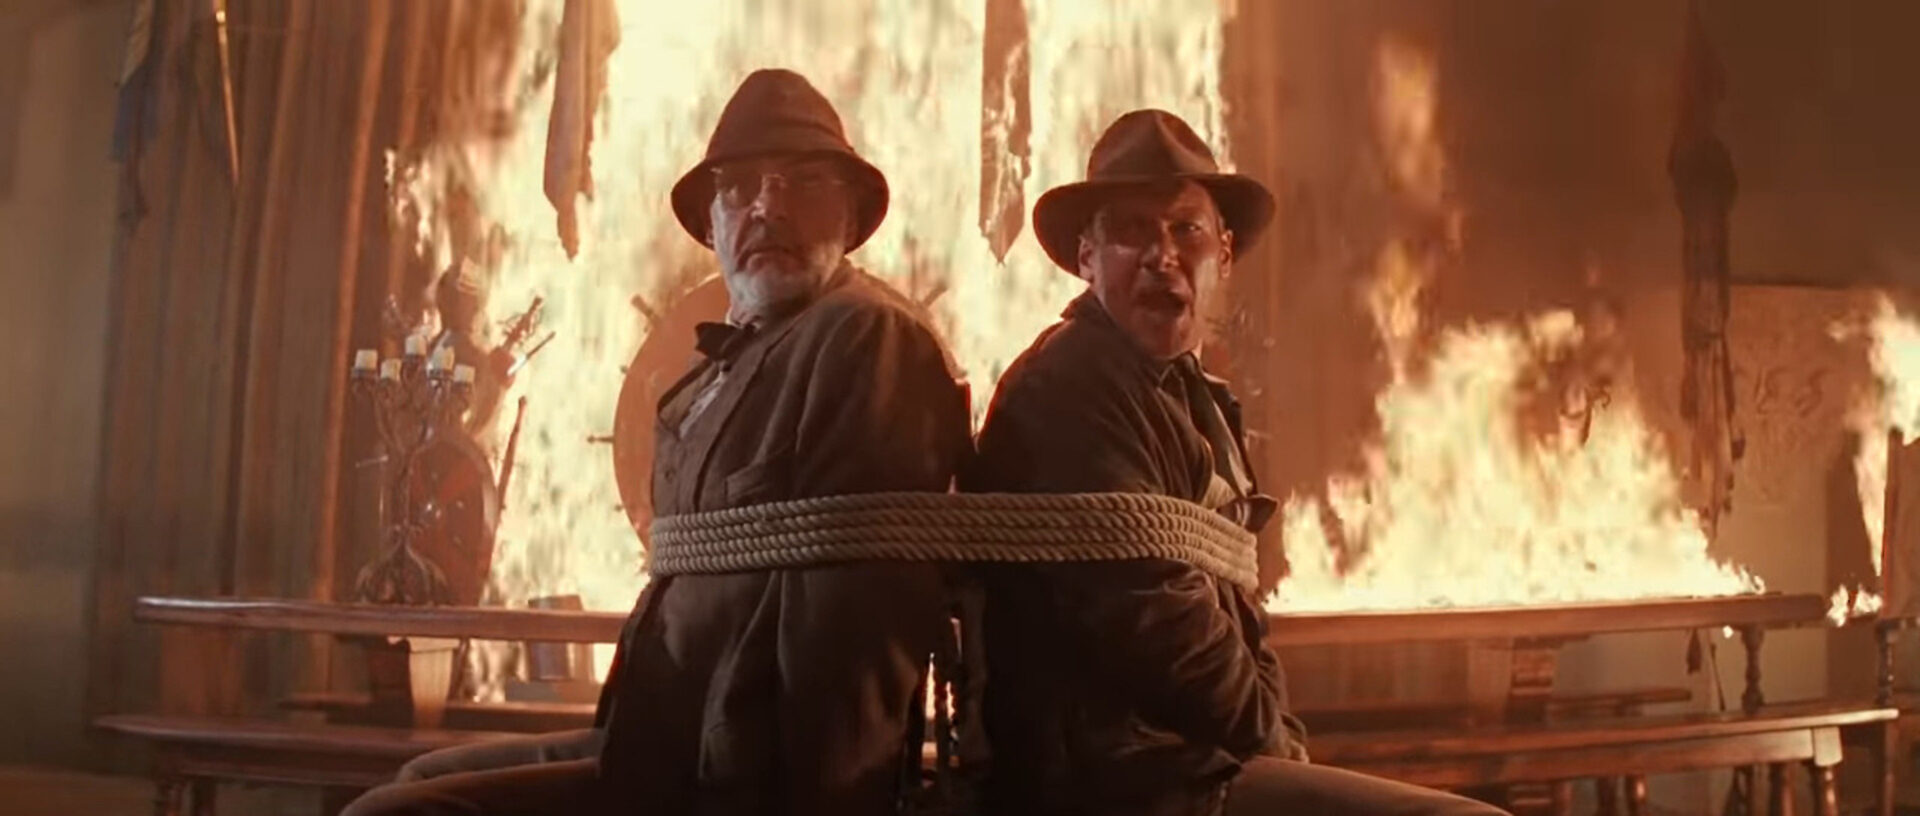 Professor Henry Jones (Sean Connery, li.) und sein Sohn Indiana Jones (Harrison Ford) kommen auf der Suche nach dem Heiligen Gral immer wieder in brenzlige Situationen. Screenshot aus «Indiana Jones und der letzte Kreuzzug» (Steven Spielberg, US 1989).